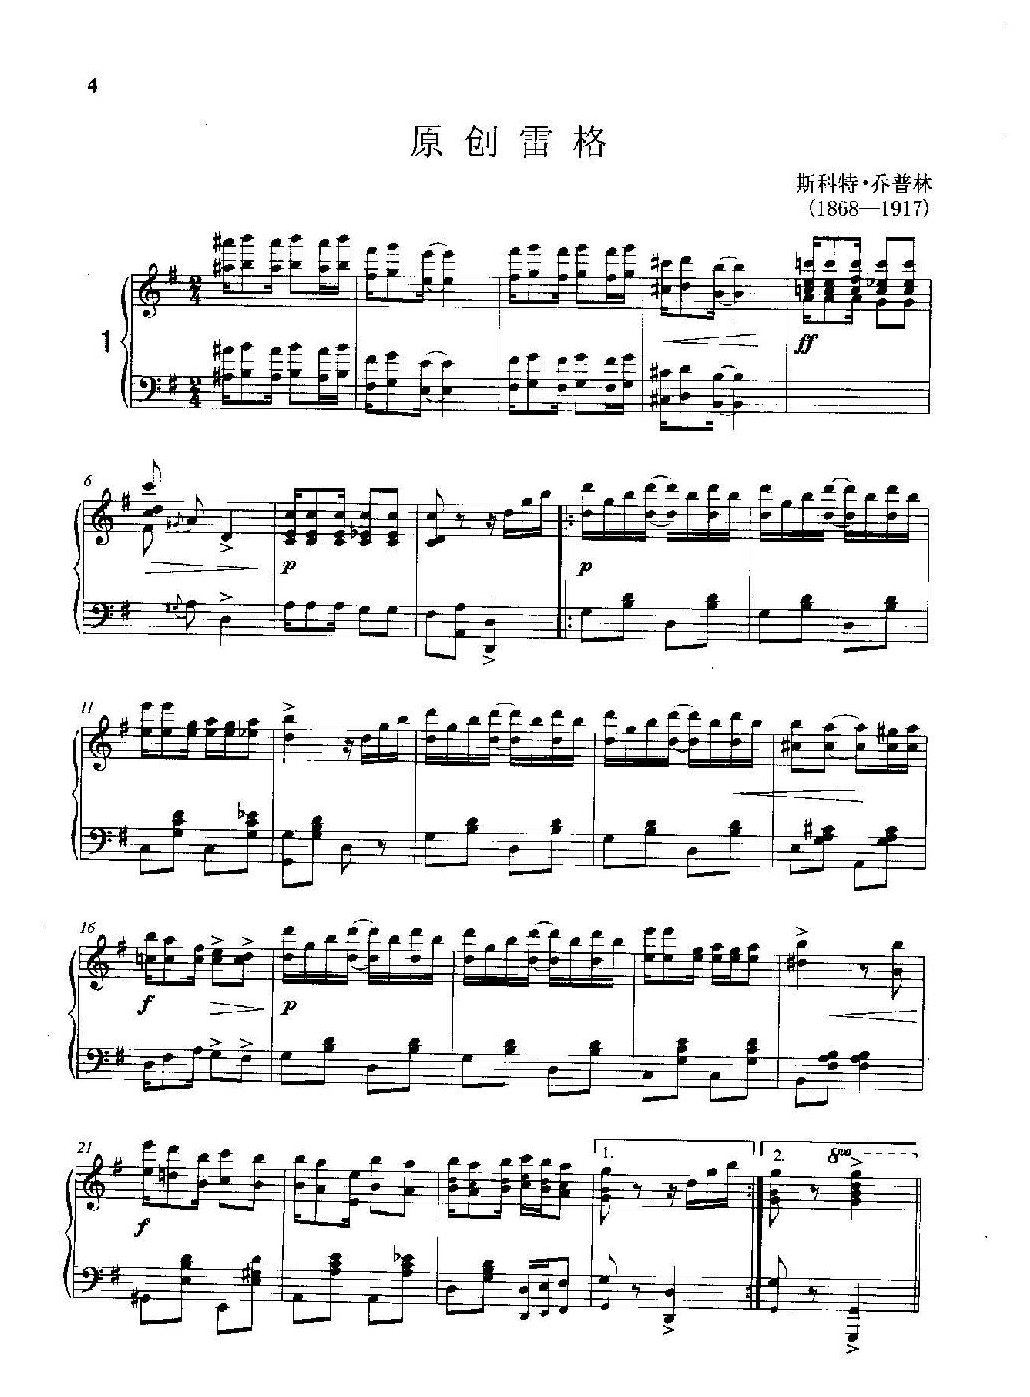 雷格泰姆钢琴乐谱《原创雷格》雷格泰姆之王斯科特·乔普林